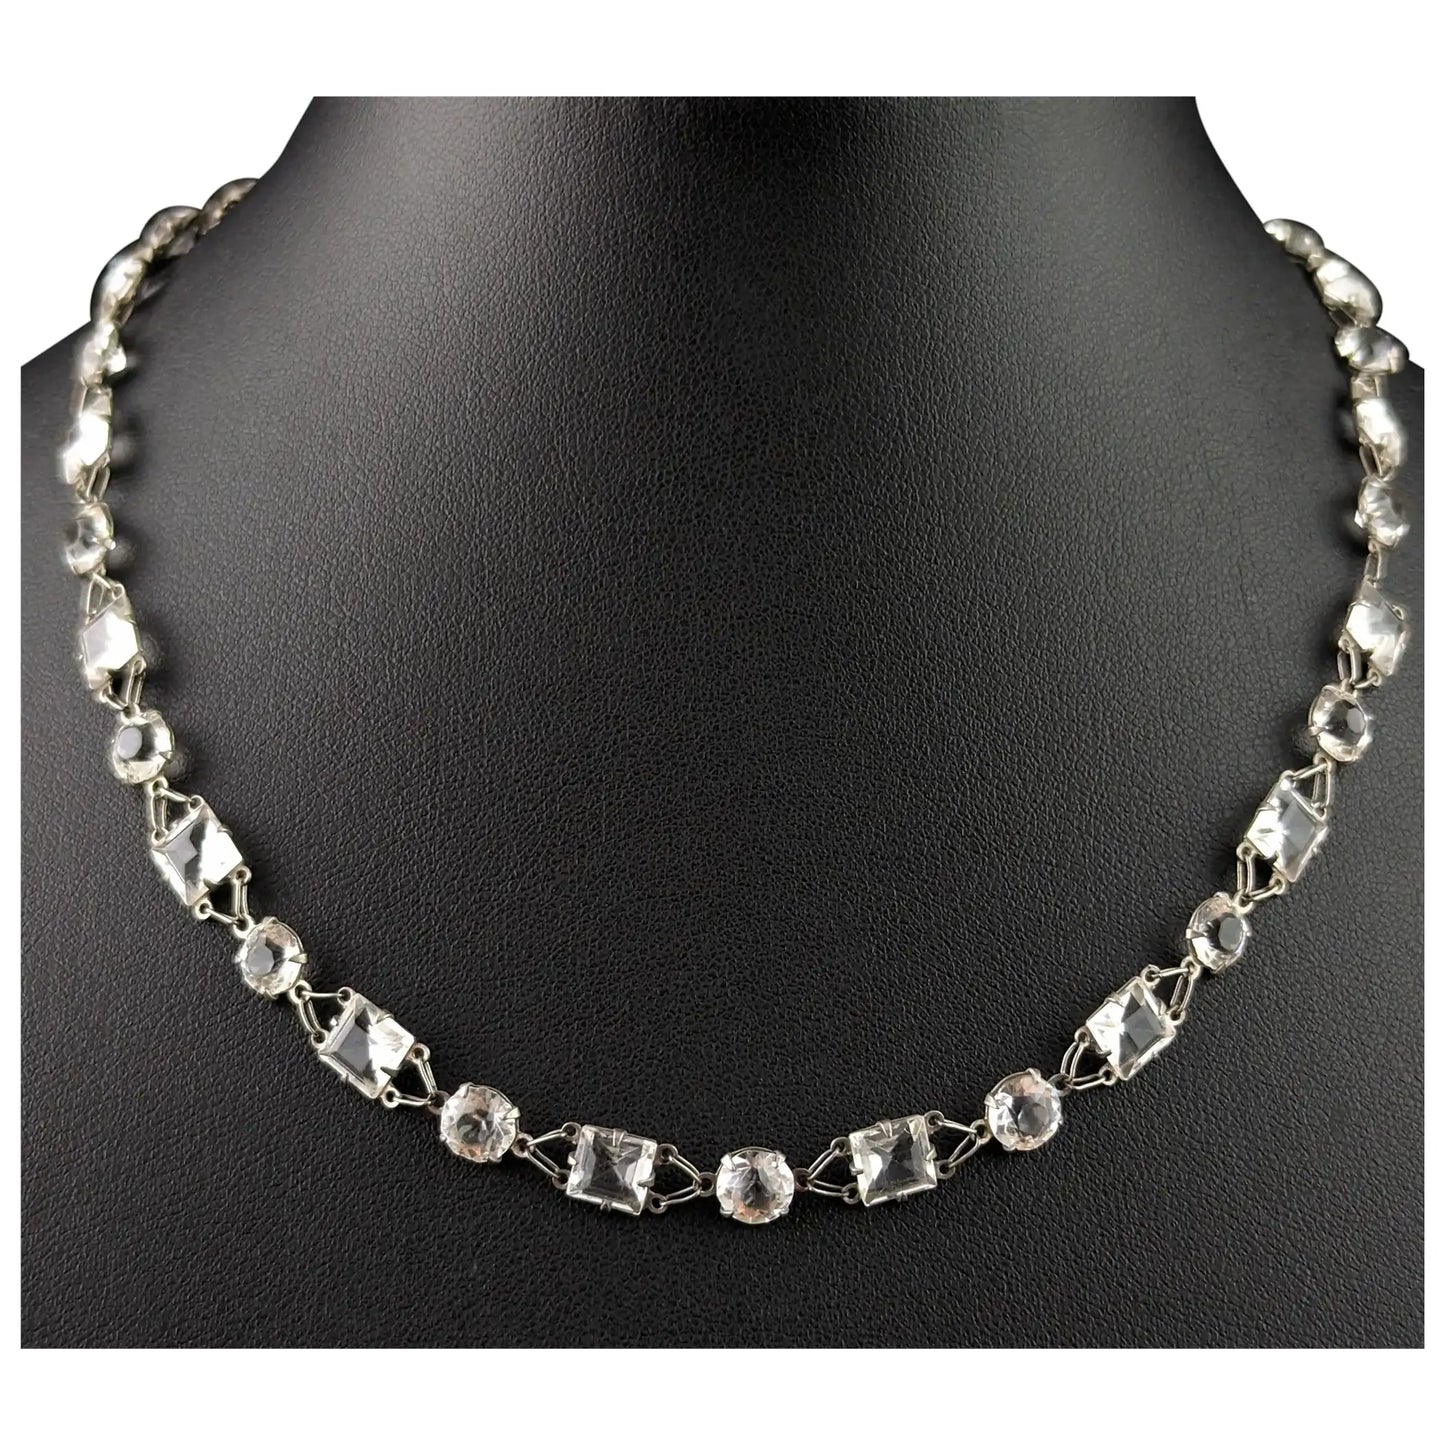 Vintage paste Riviere necklace, 800 silver, c1930s